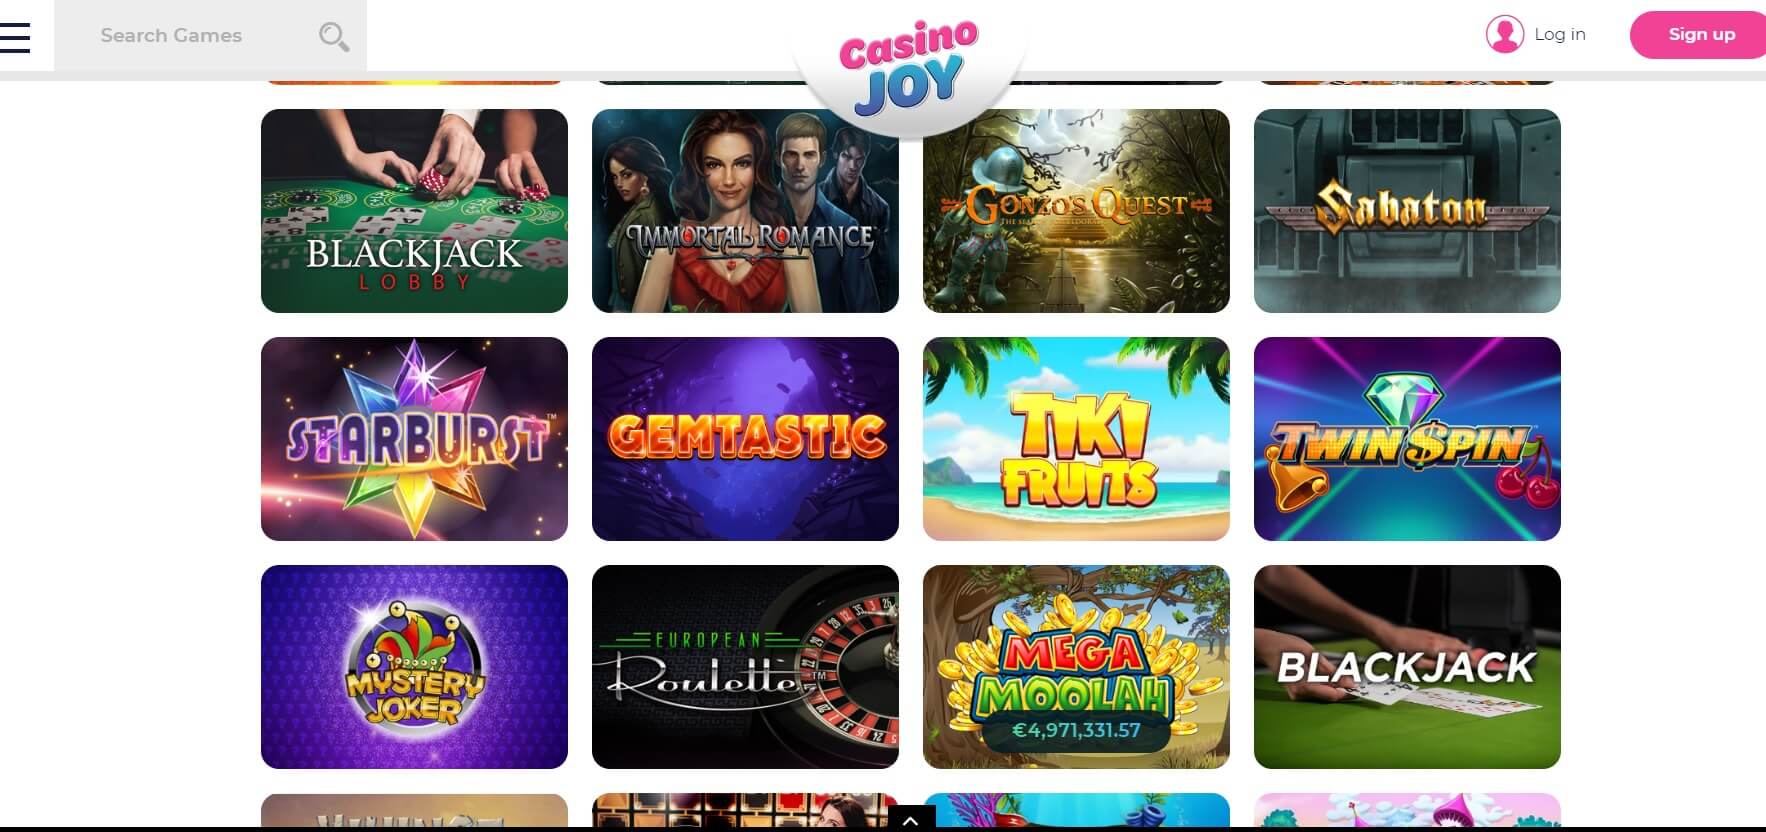 casino joy online review uk